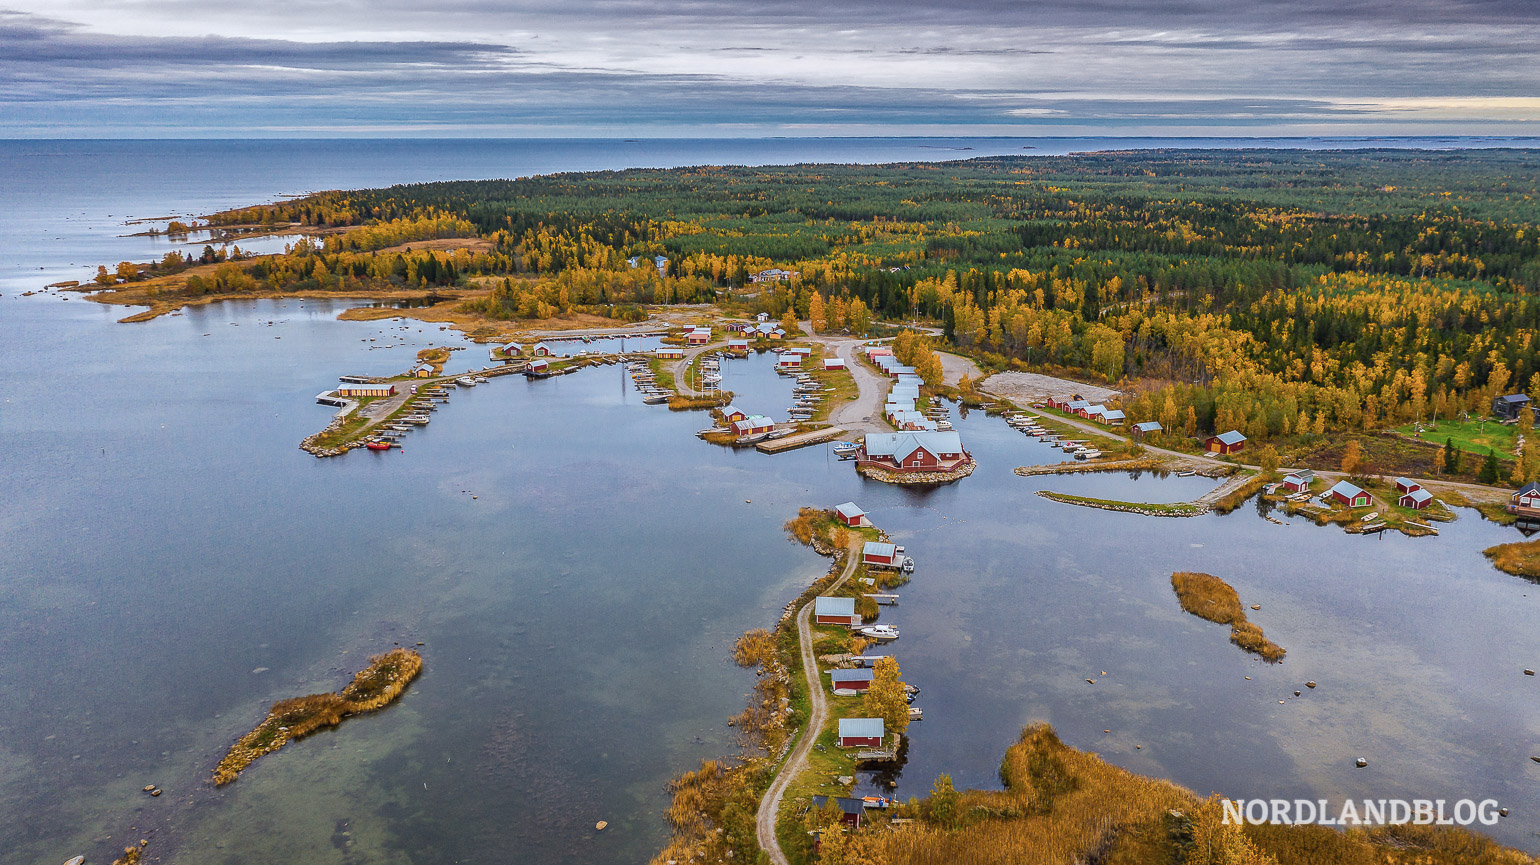 Bild mit der Drohne DJI Mavic Pro an der Ostseeküste in Finnland auf unserer Wohnmobil-Reise aufgenommen